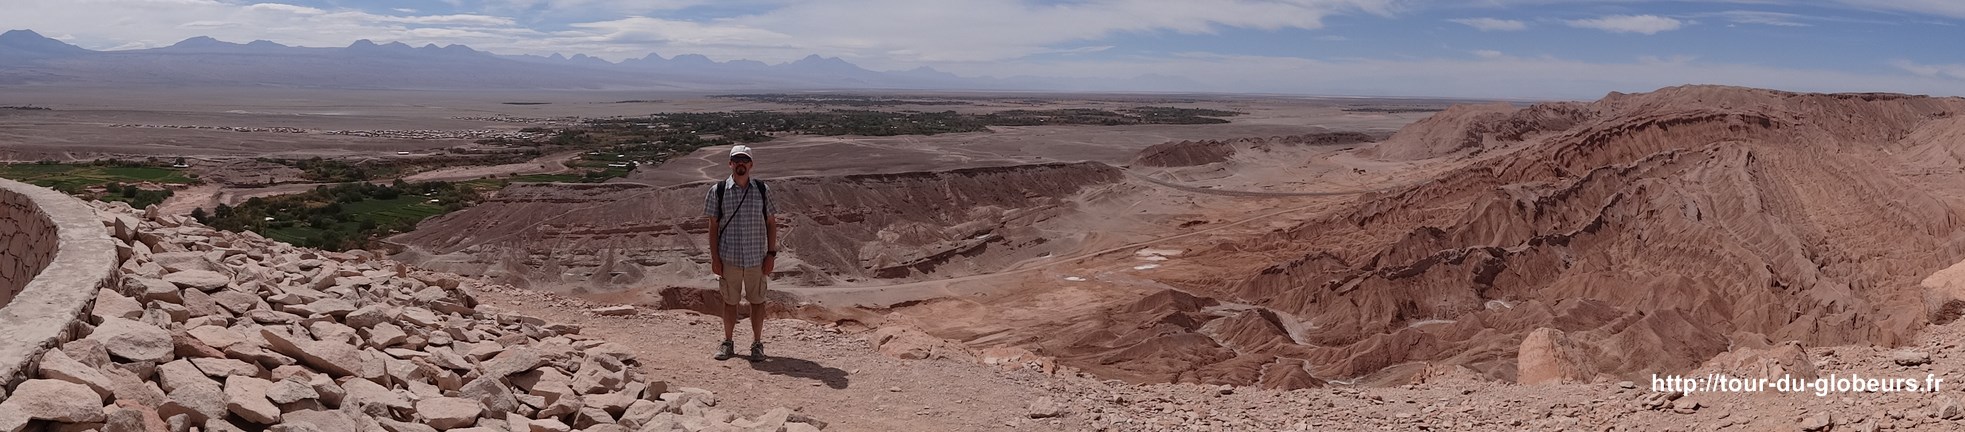 Chili - Atacama - Panorama